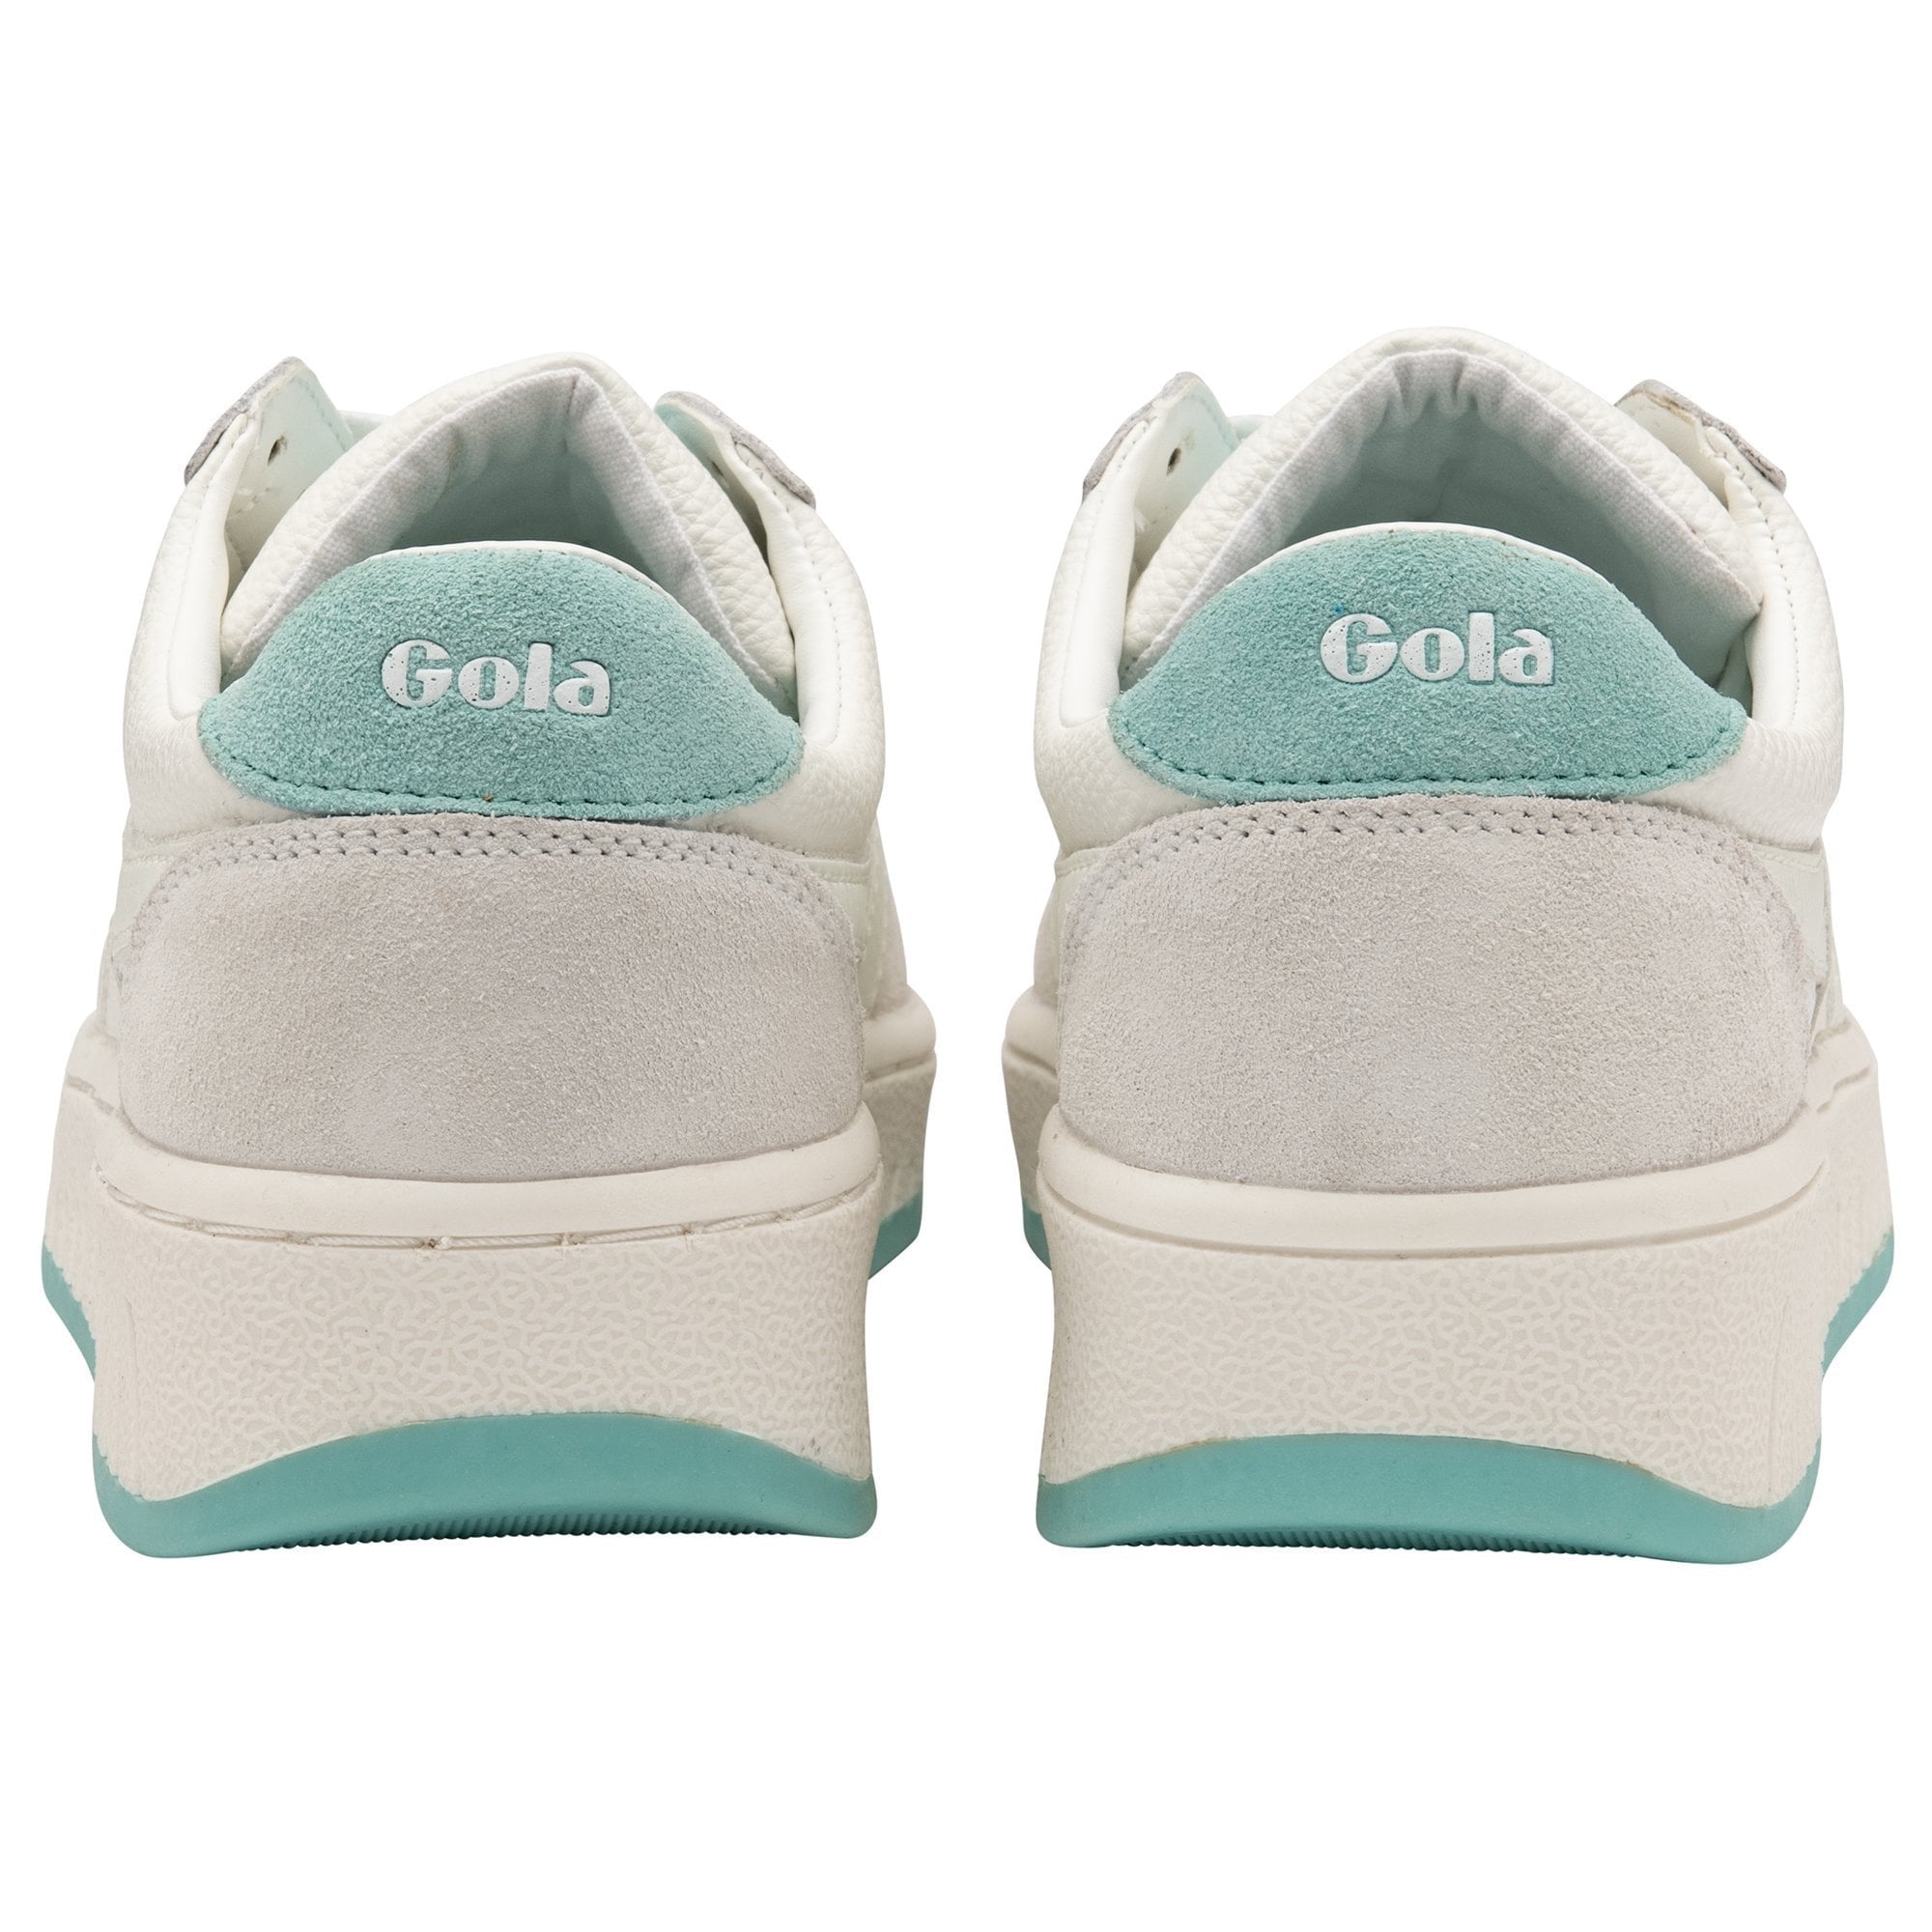 Gola Grandslam '88 Sneakers